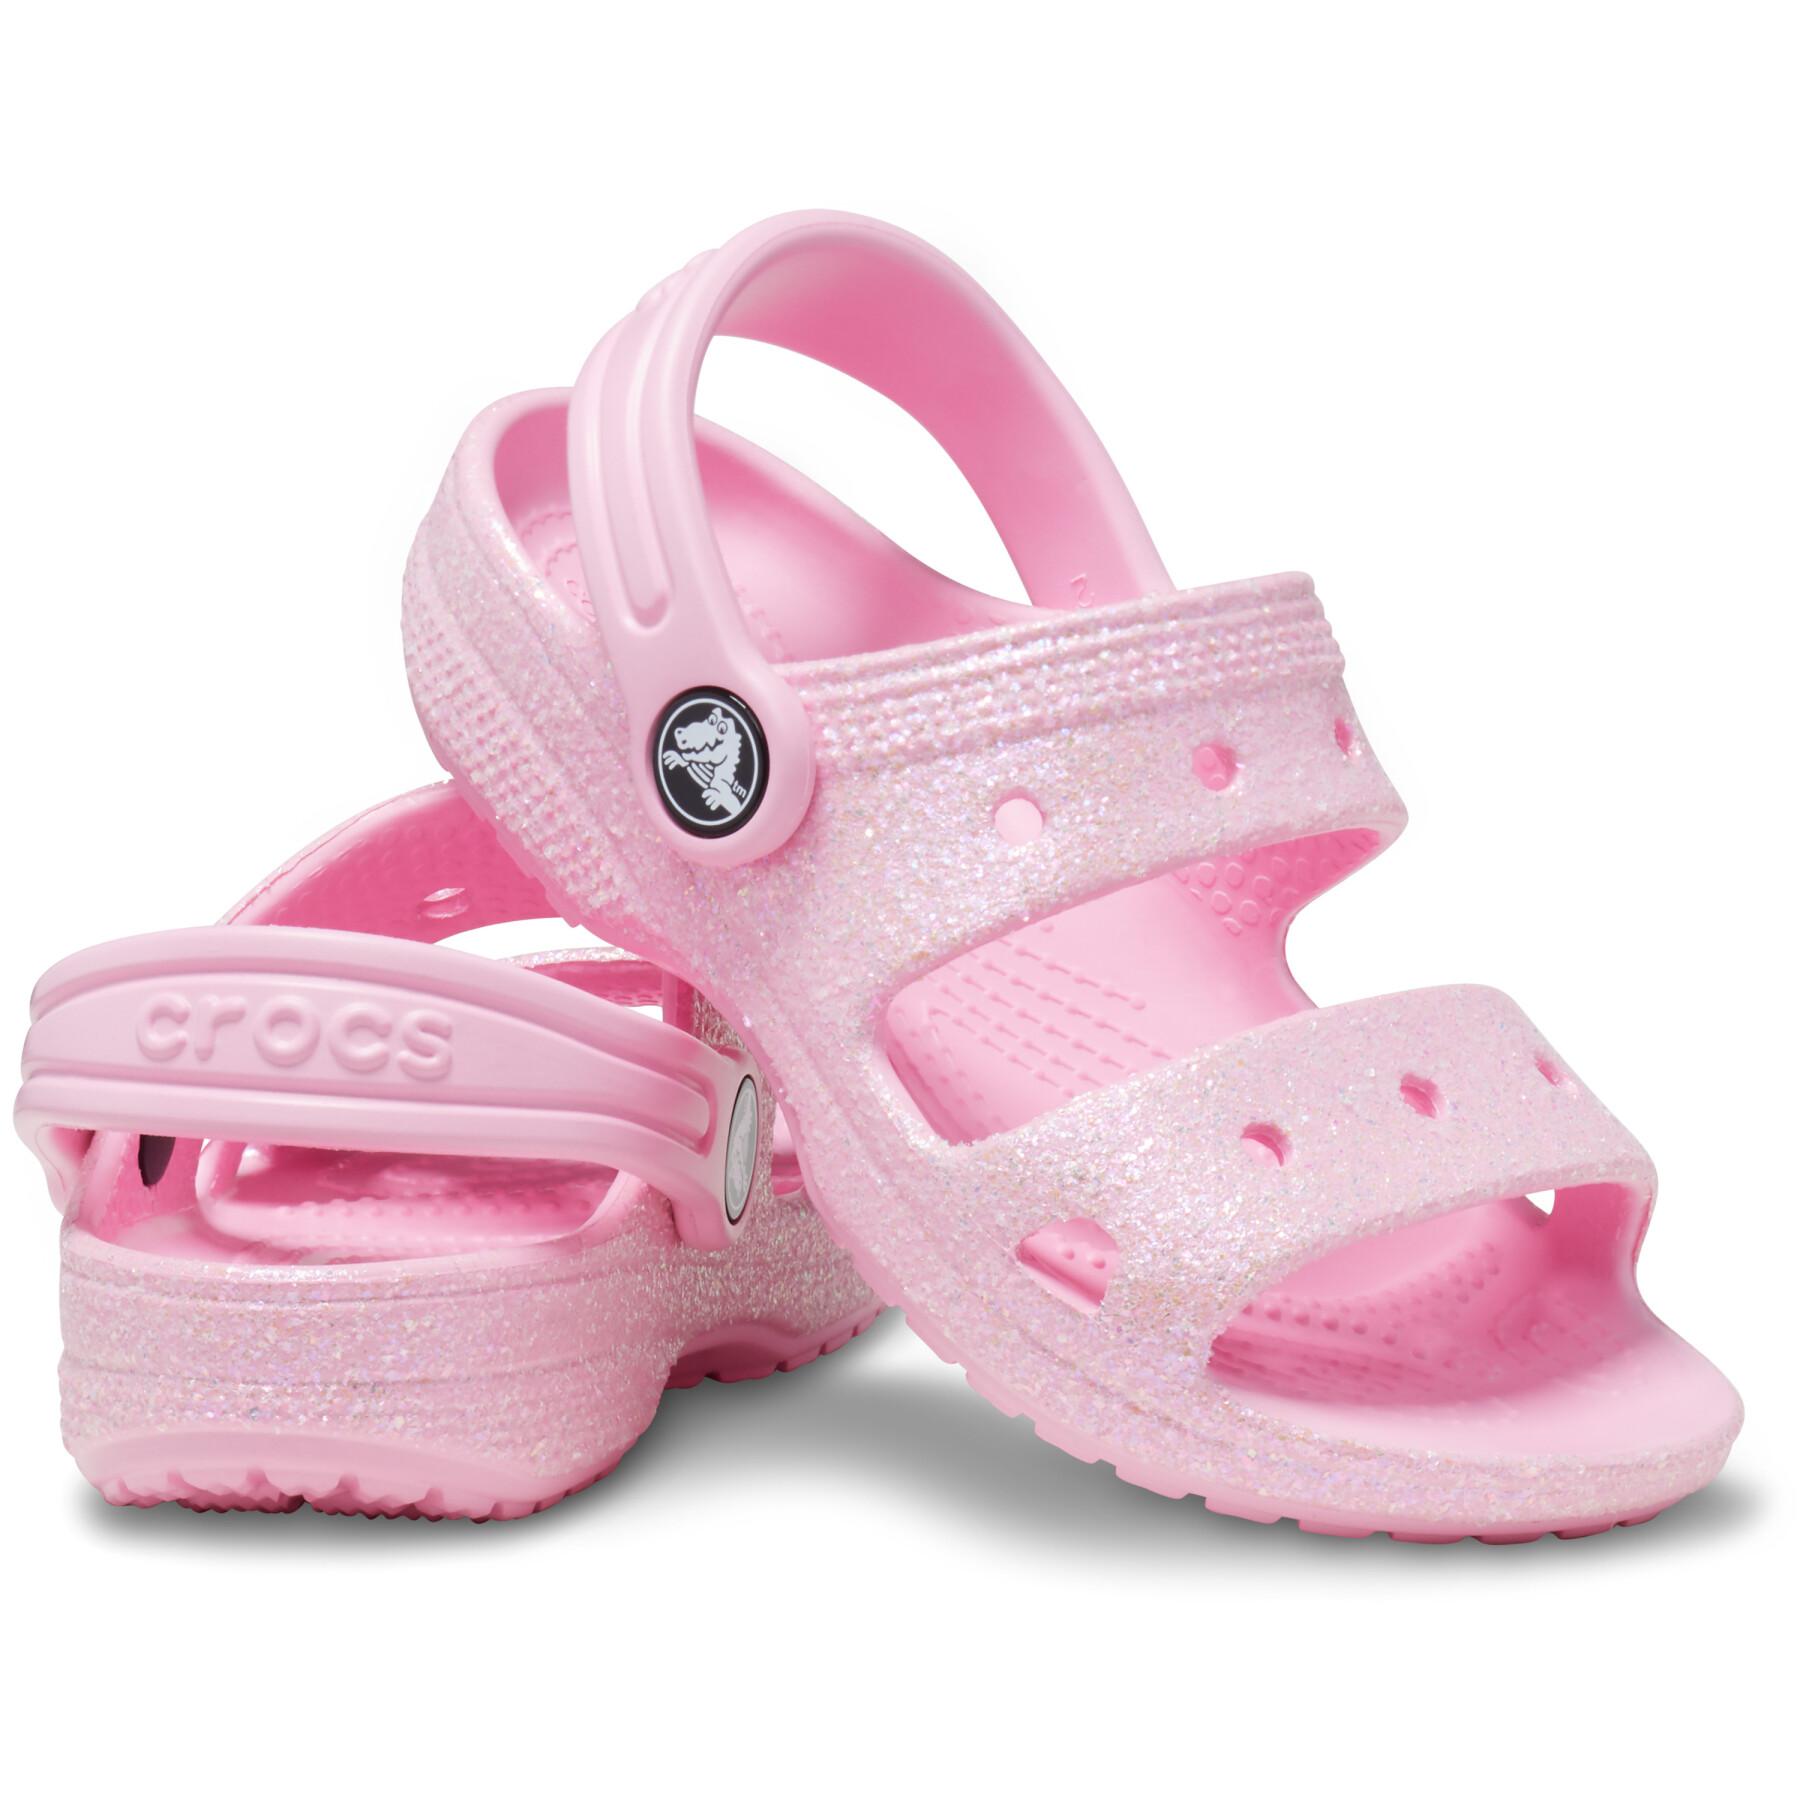 Sandalias para bebé Crocs Classics Glitter